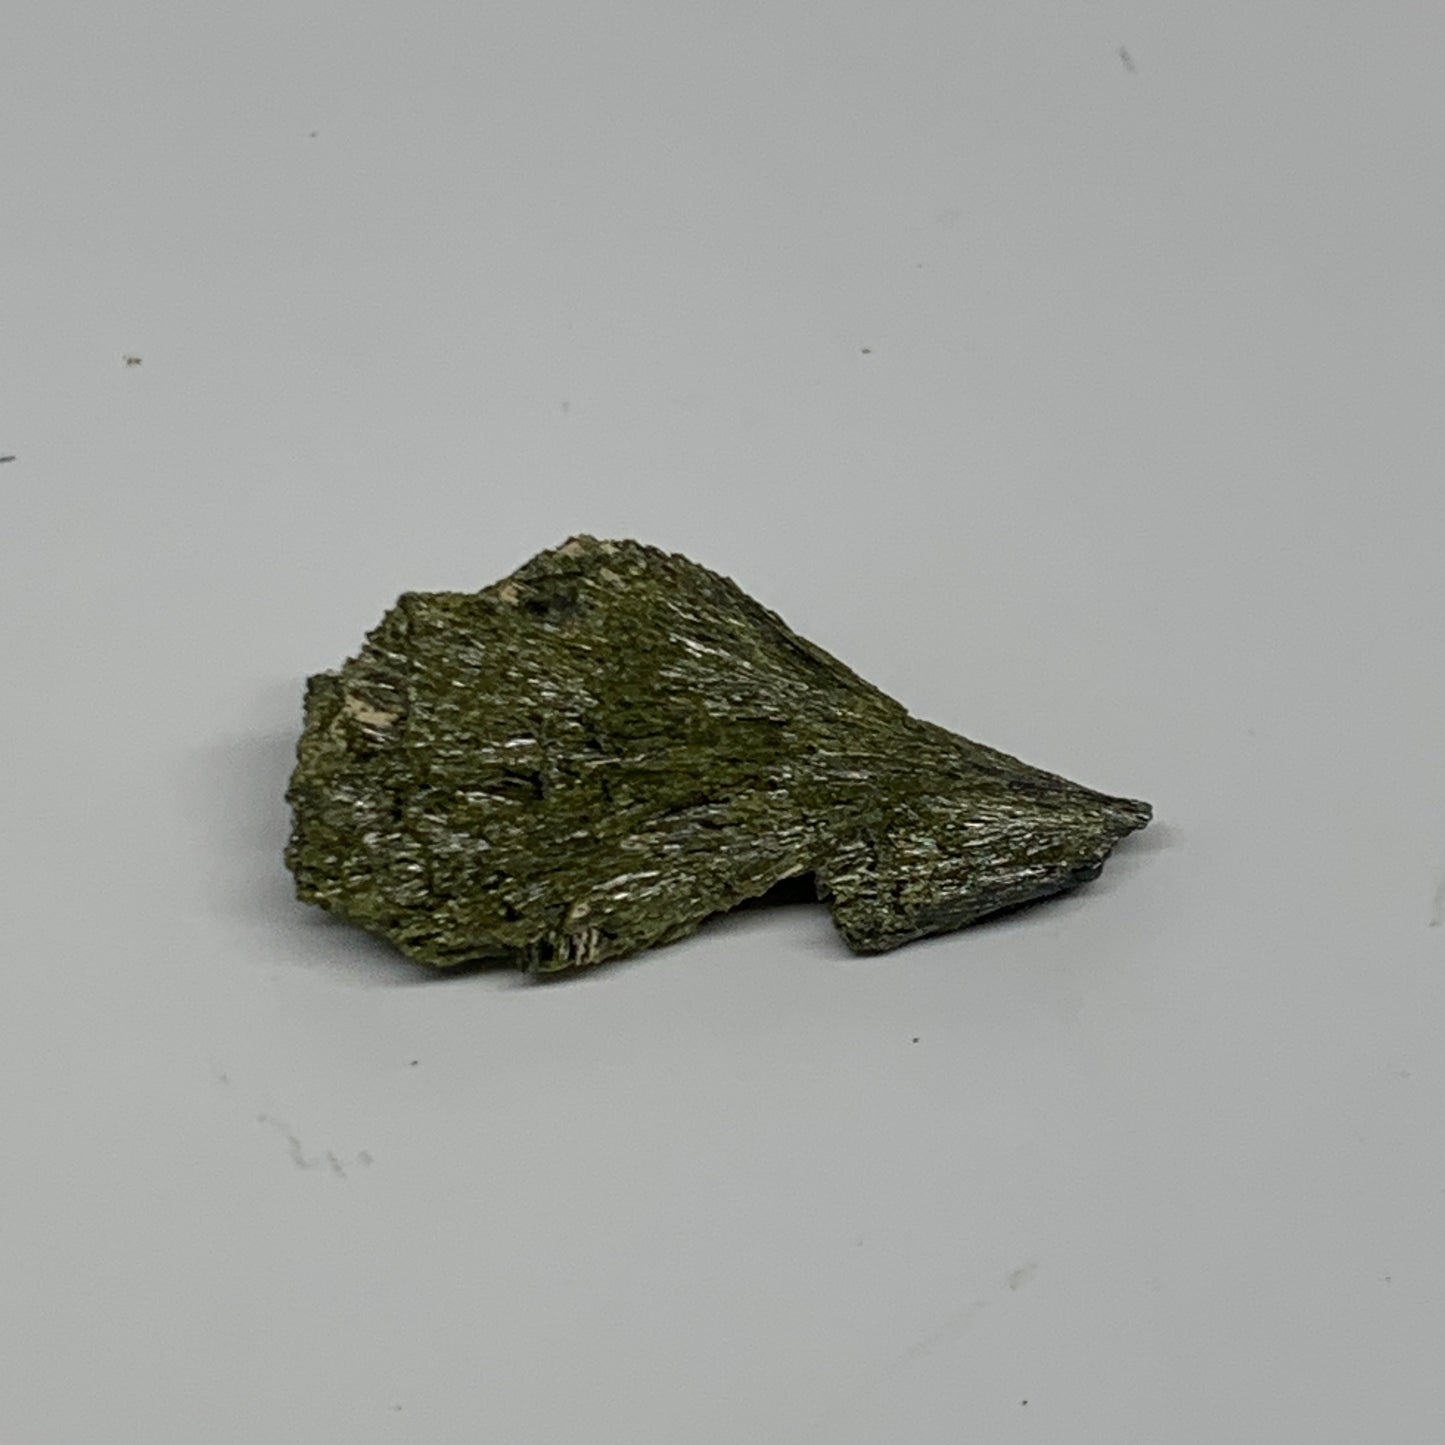 21.9g,2.1"x1.2"x0.5",Green Epidote Custer/Leaf Mineral Specimen @Pakistan,B27614